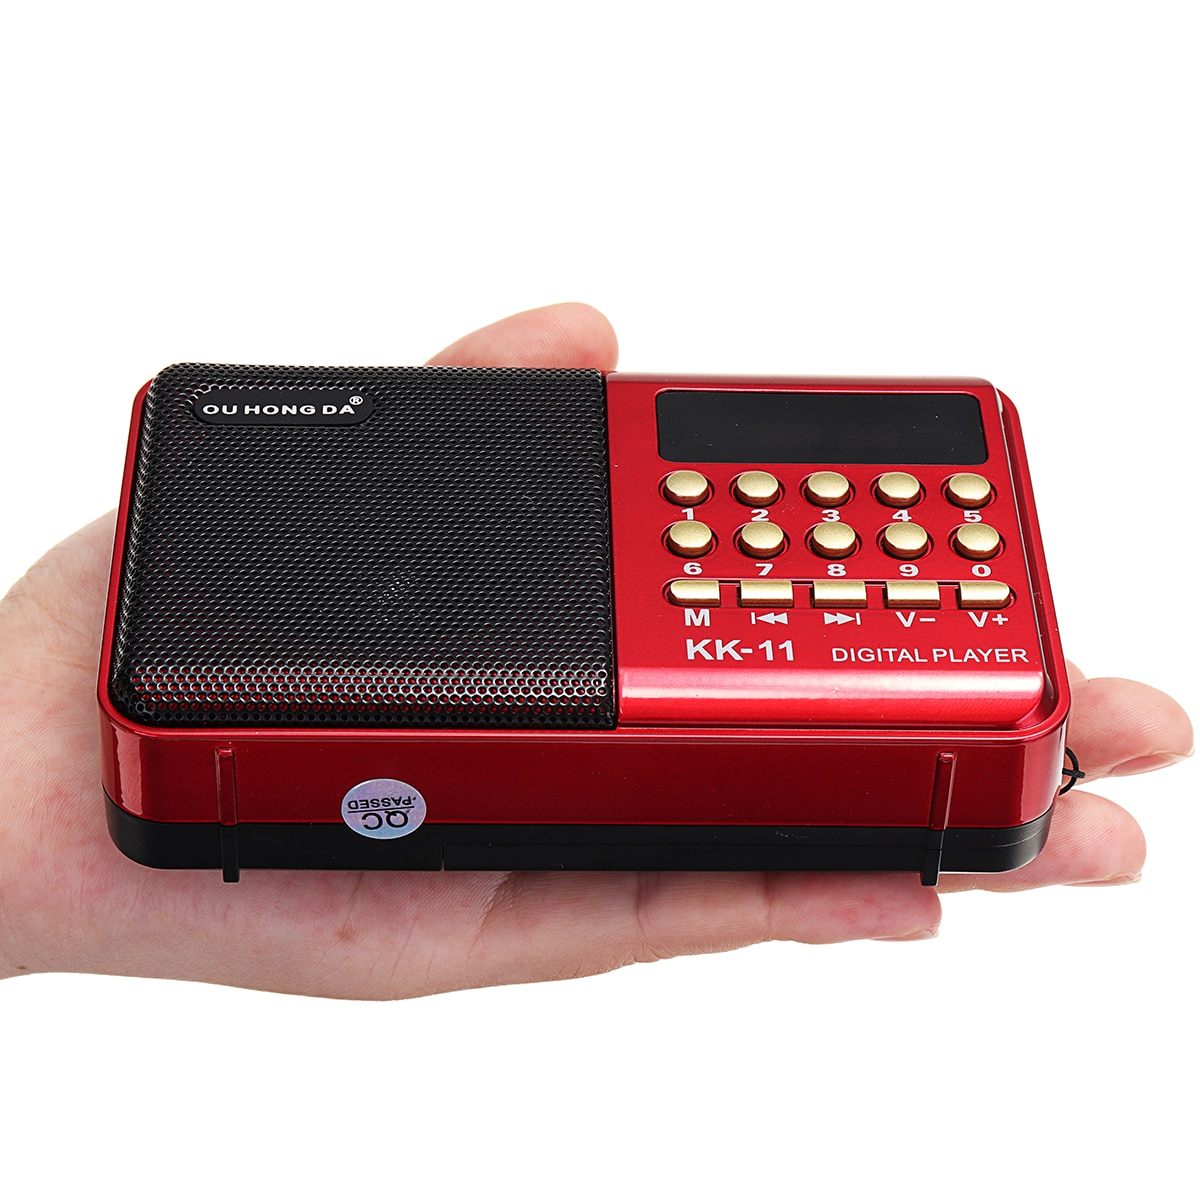 Portable FM Radio Mini MP3 Player